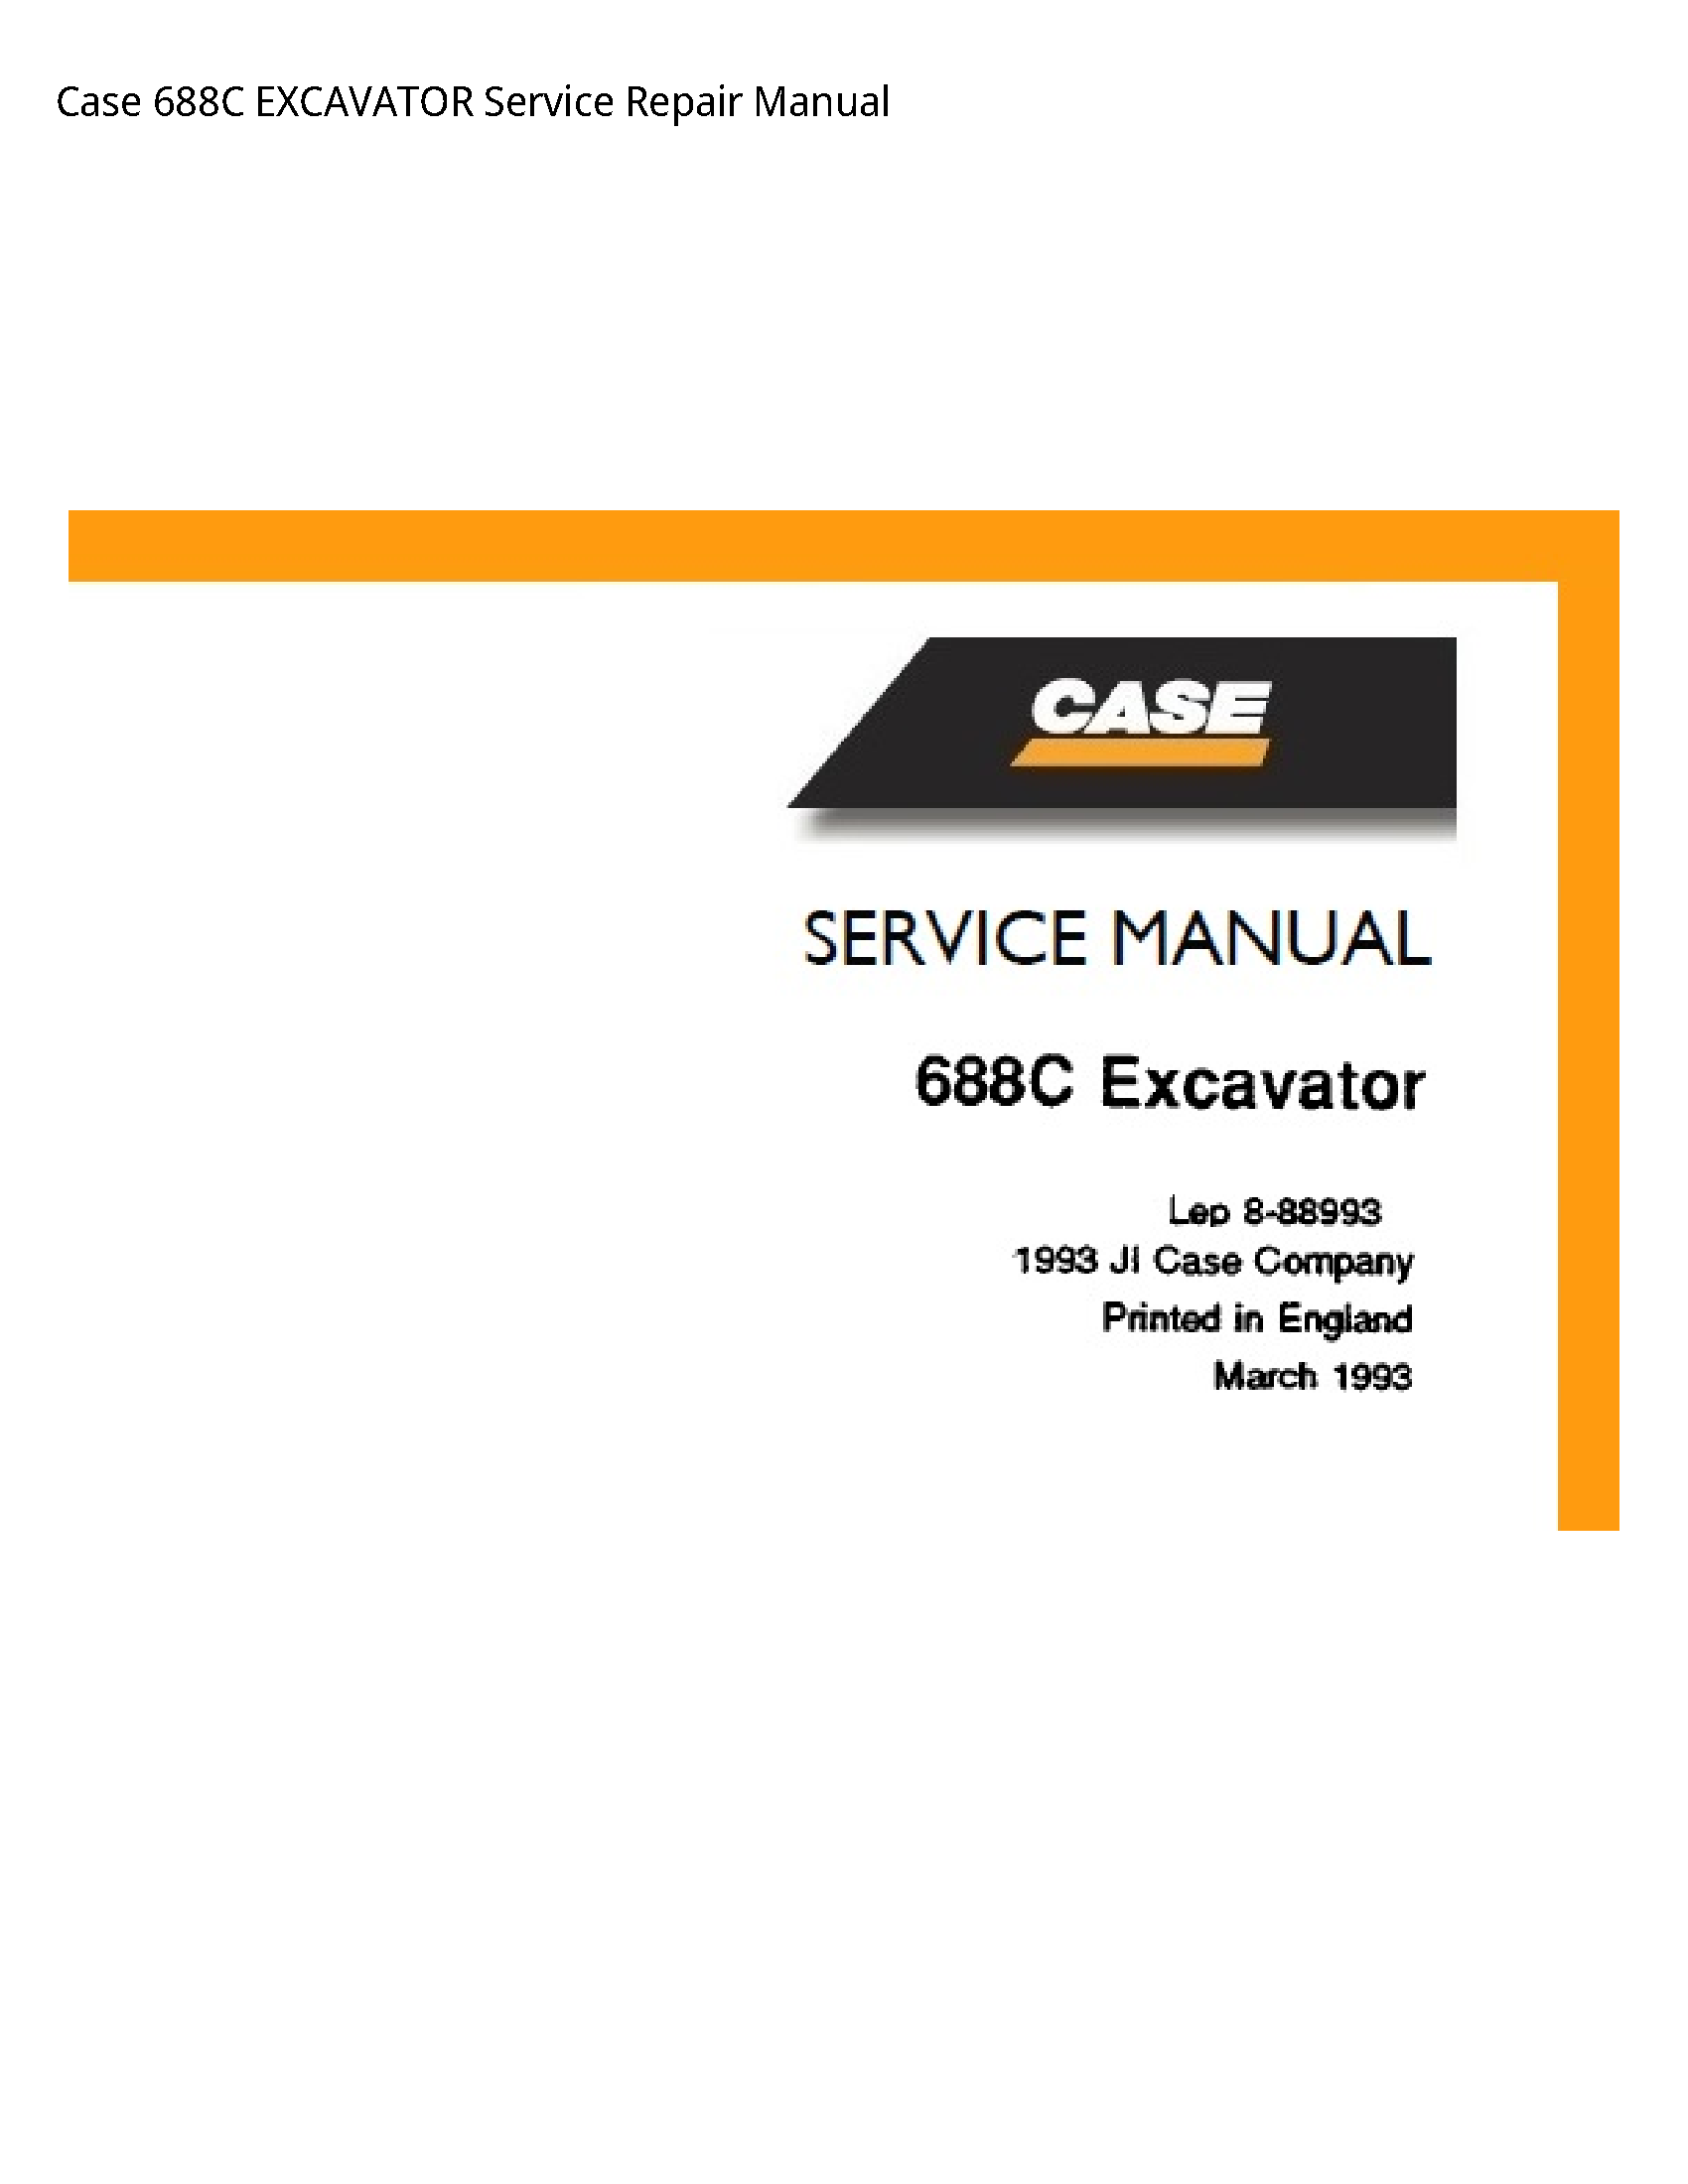 Case/Case IH 688C EXCAVATOR manual